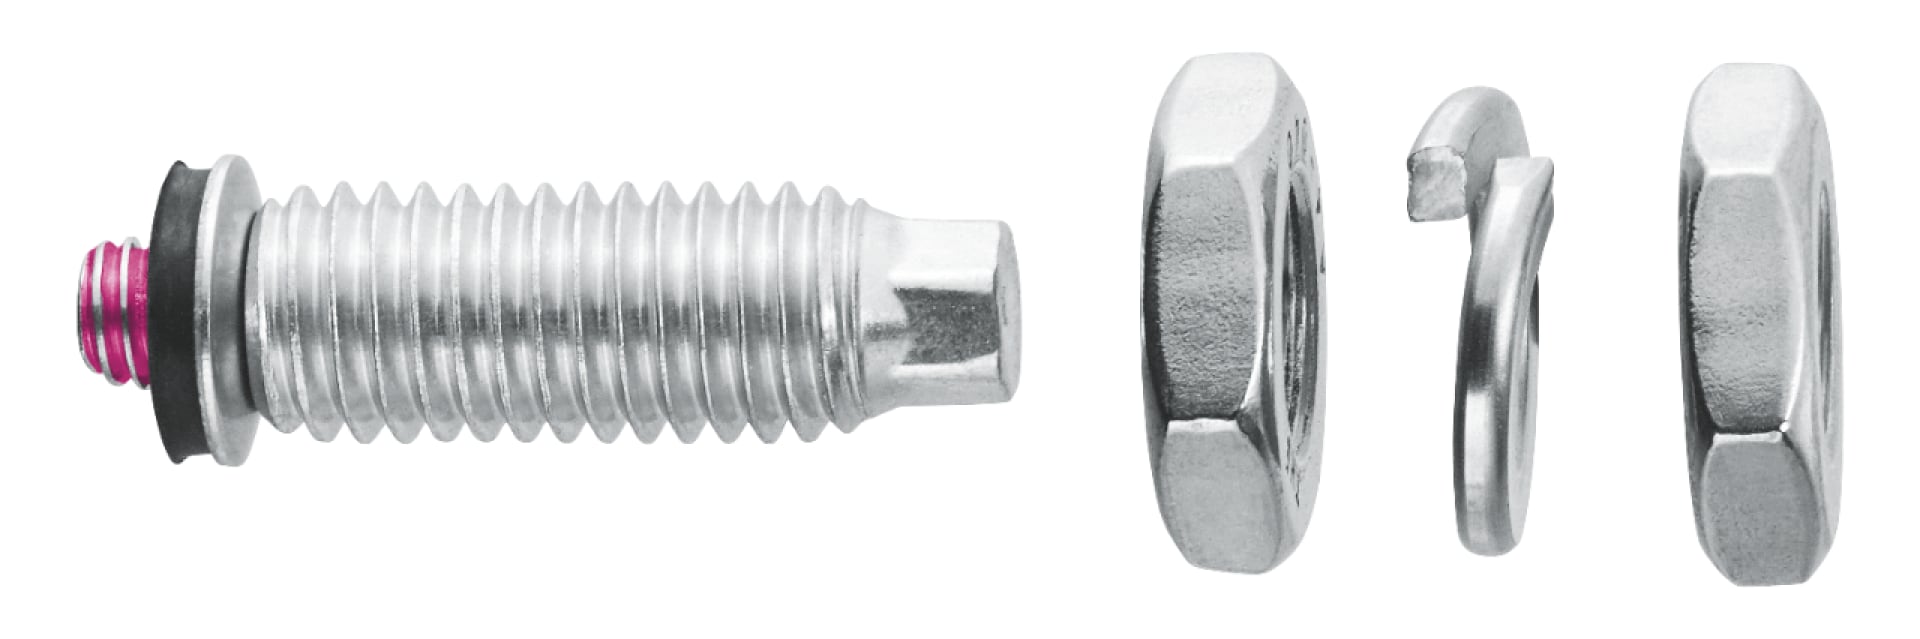 S-BT-ER threaded screw-in stud